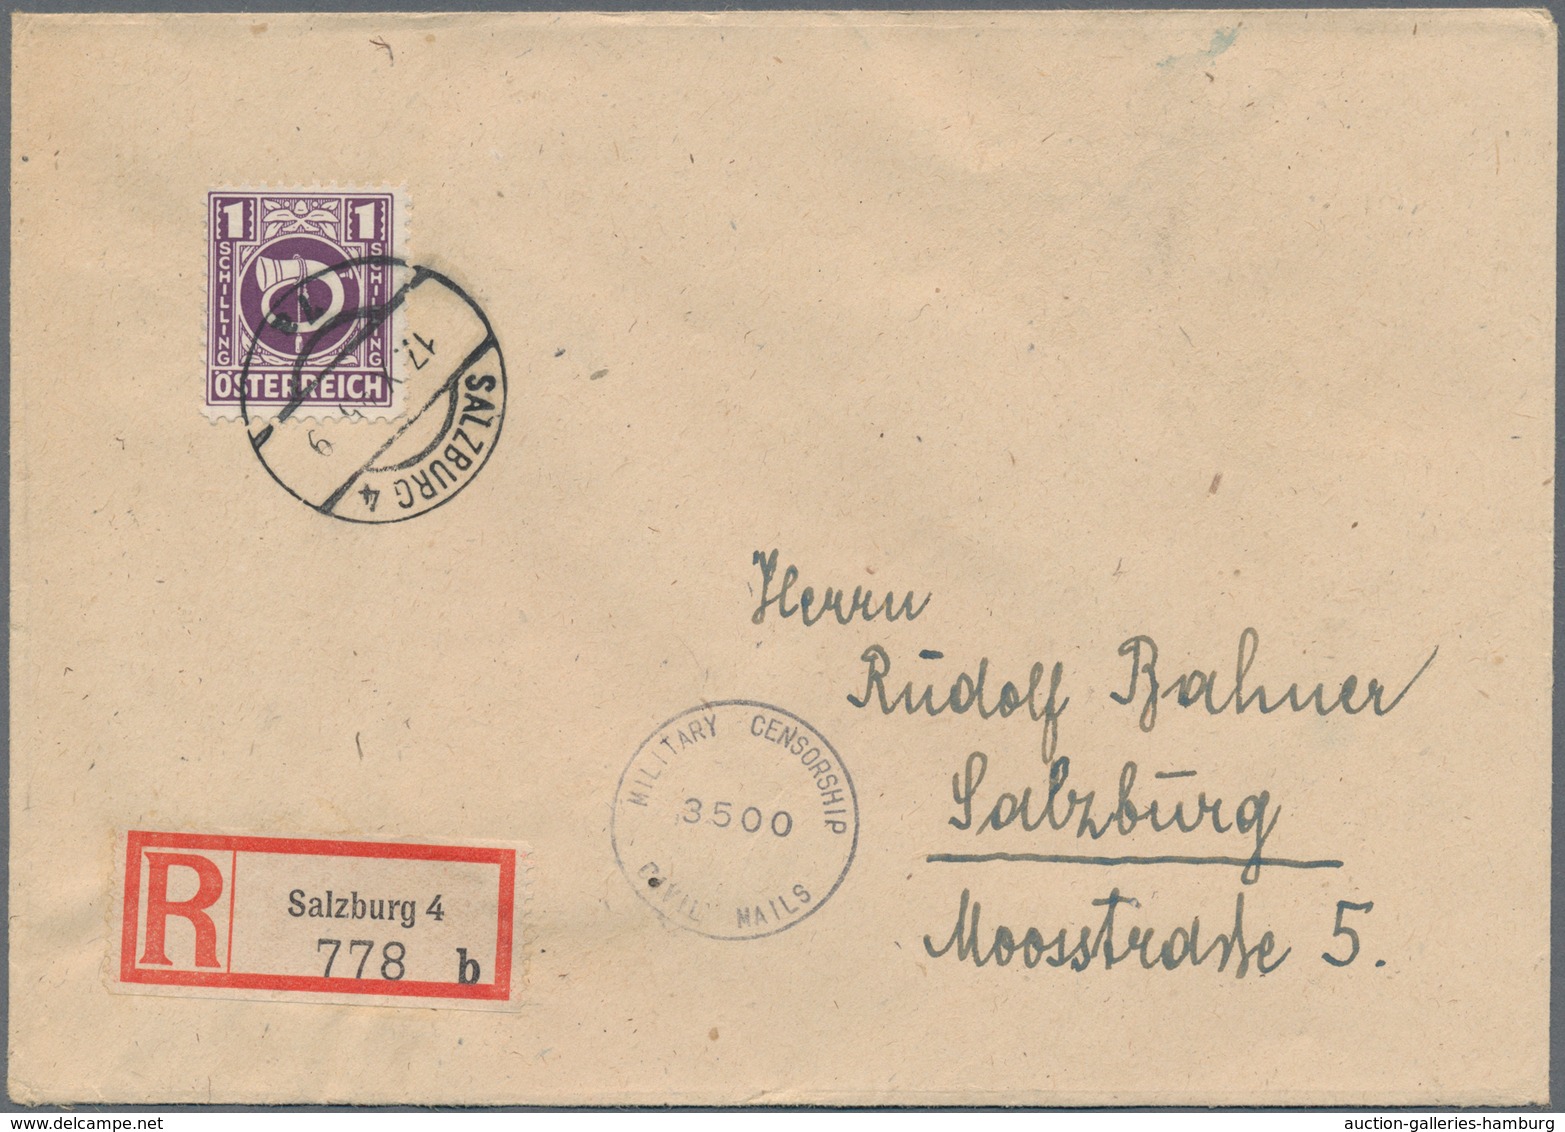 Österreich: 1945, Gemeinschaftsausgabe "Posthorn", 60 Gr., 1 Sch., 2 Sch. Und 5 Sch. Je Auf Philatel - Covers & Documents